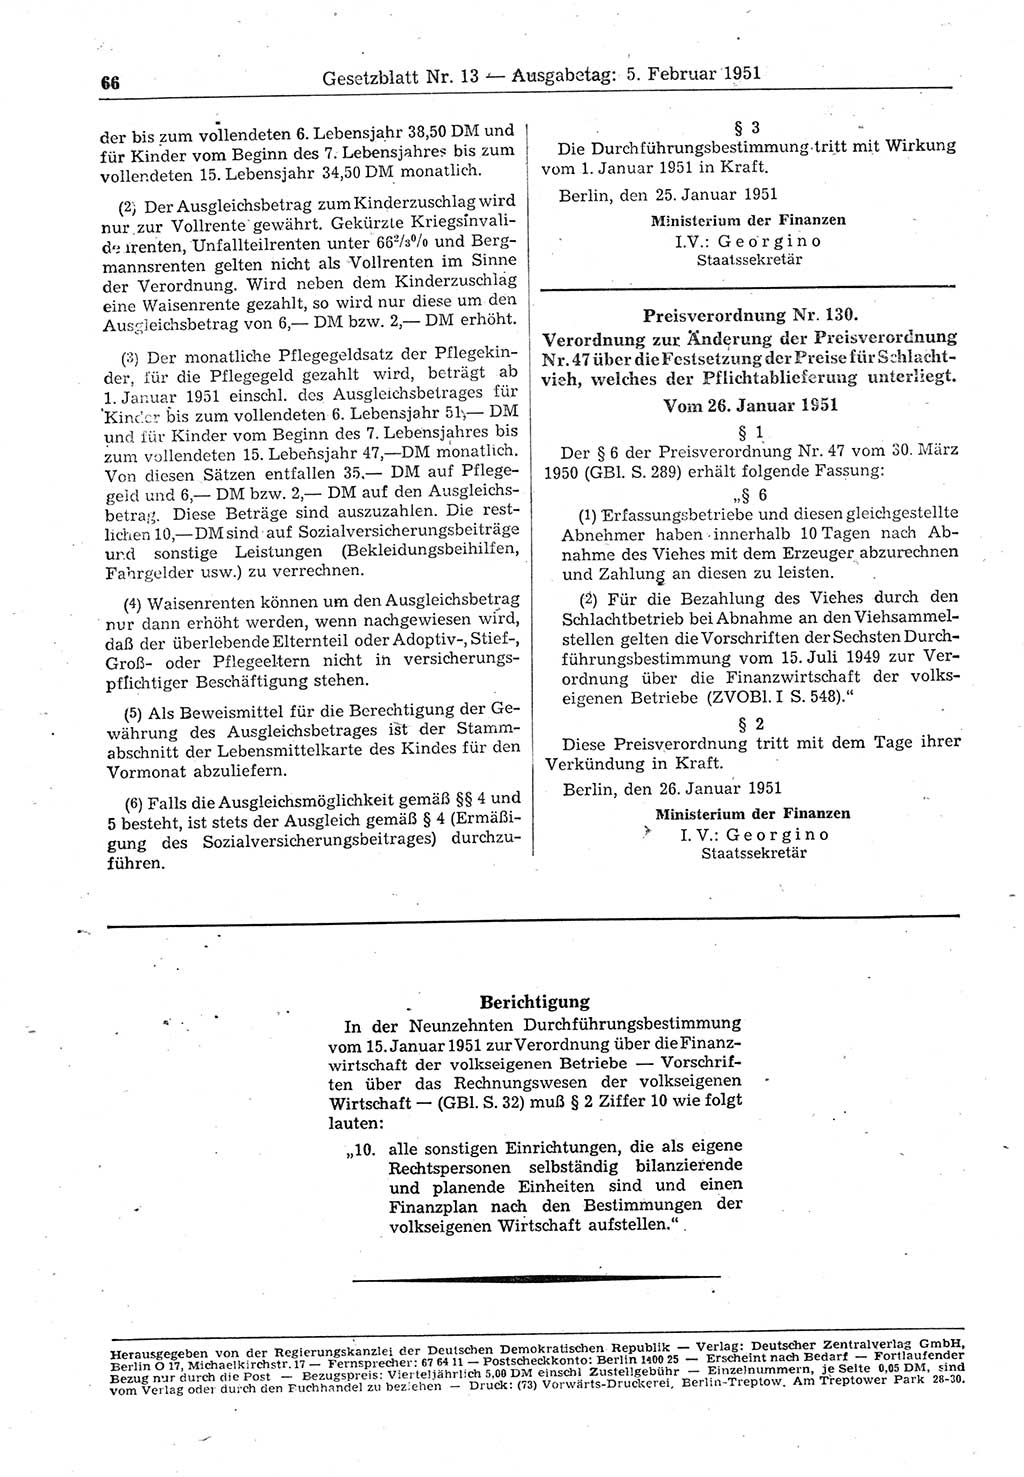 Gesetzblatt (GBl.) der Deutschen Demokratischen Republik (DDR) 1951, Seite 66 (GBl. DDR 1951, S. 66)